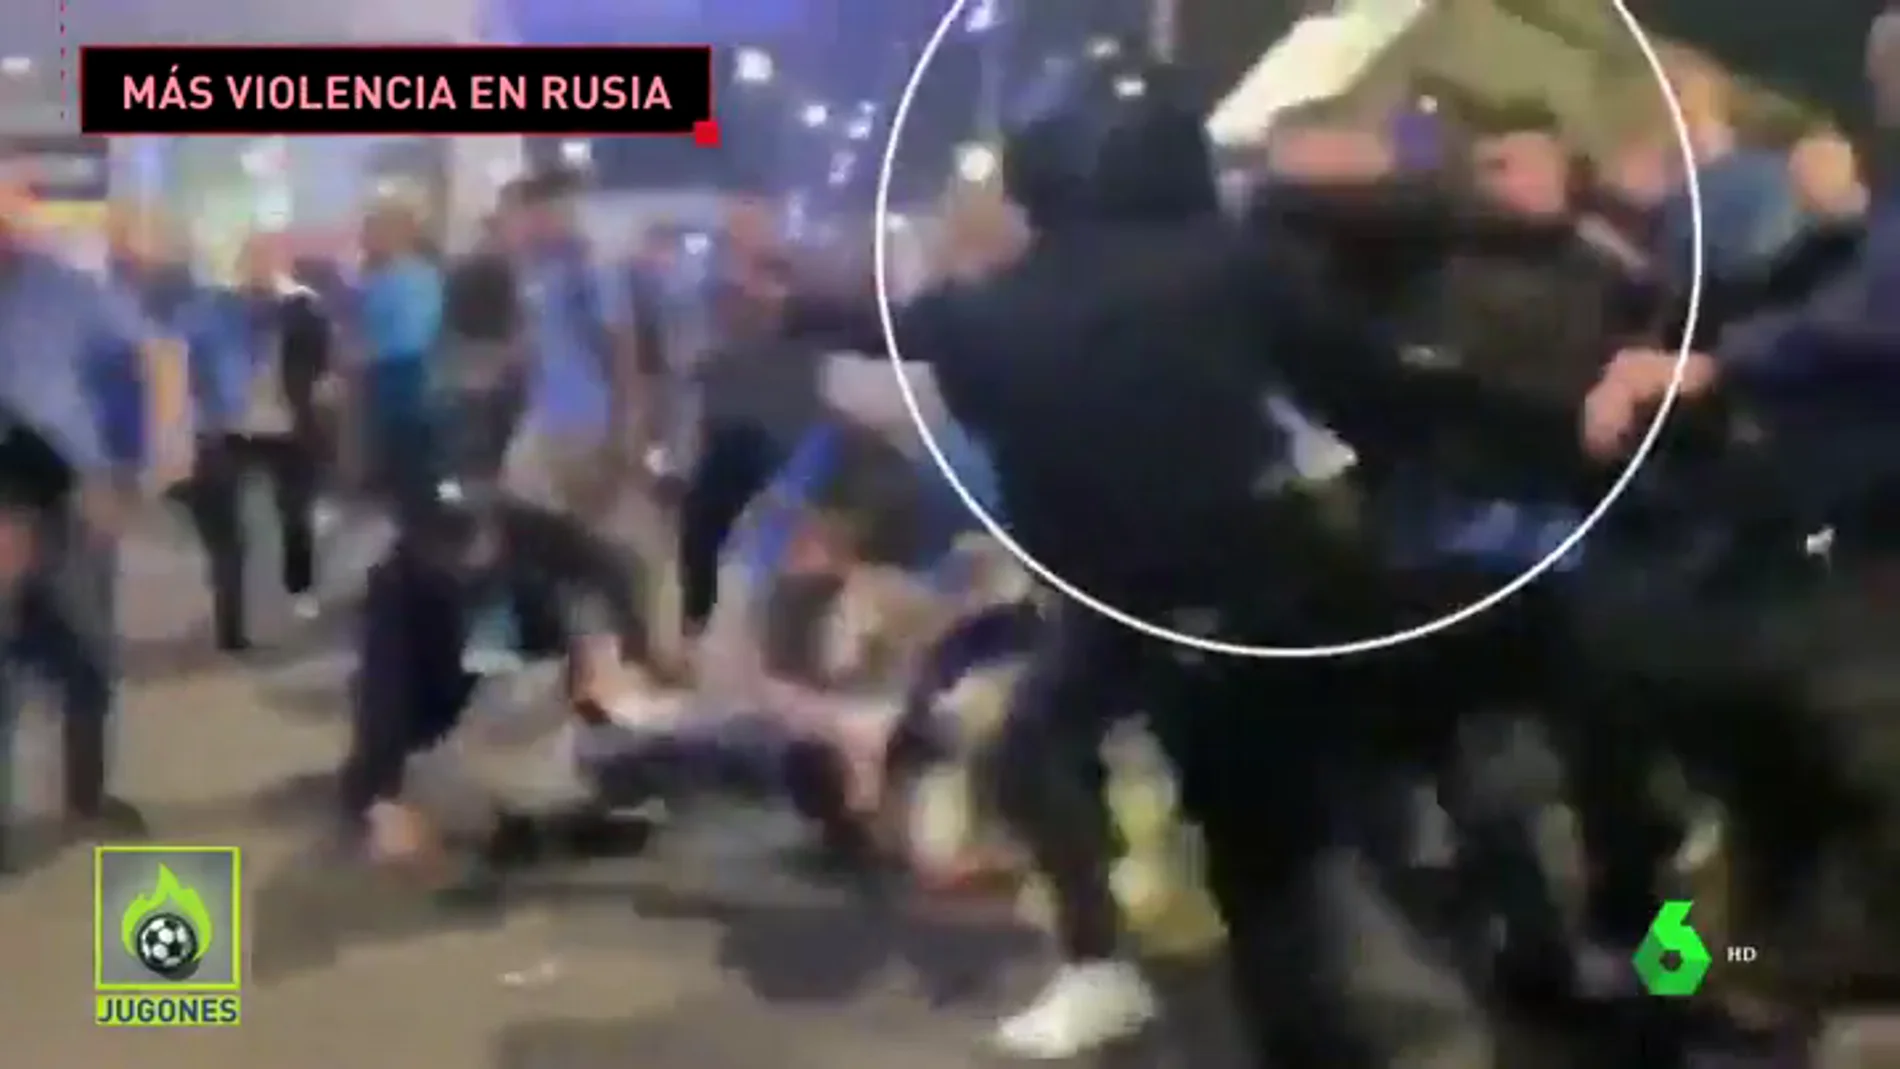 Violencia ultra en el Zenit vs Krasnodar: intentan quitar la porra a un Policía